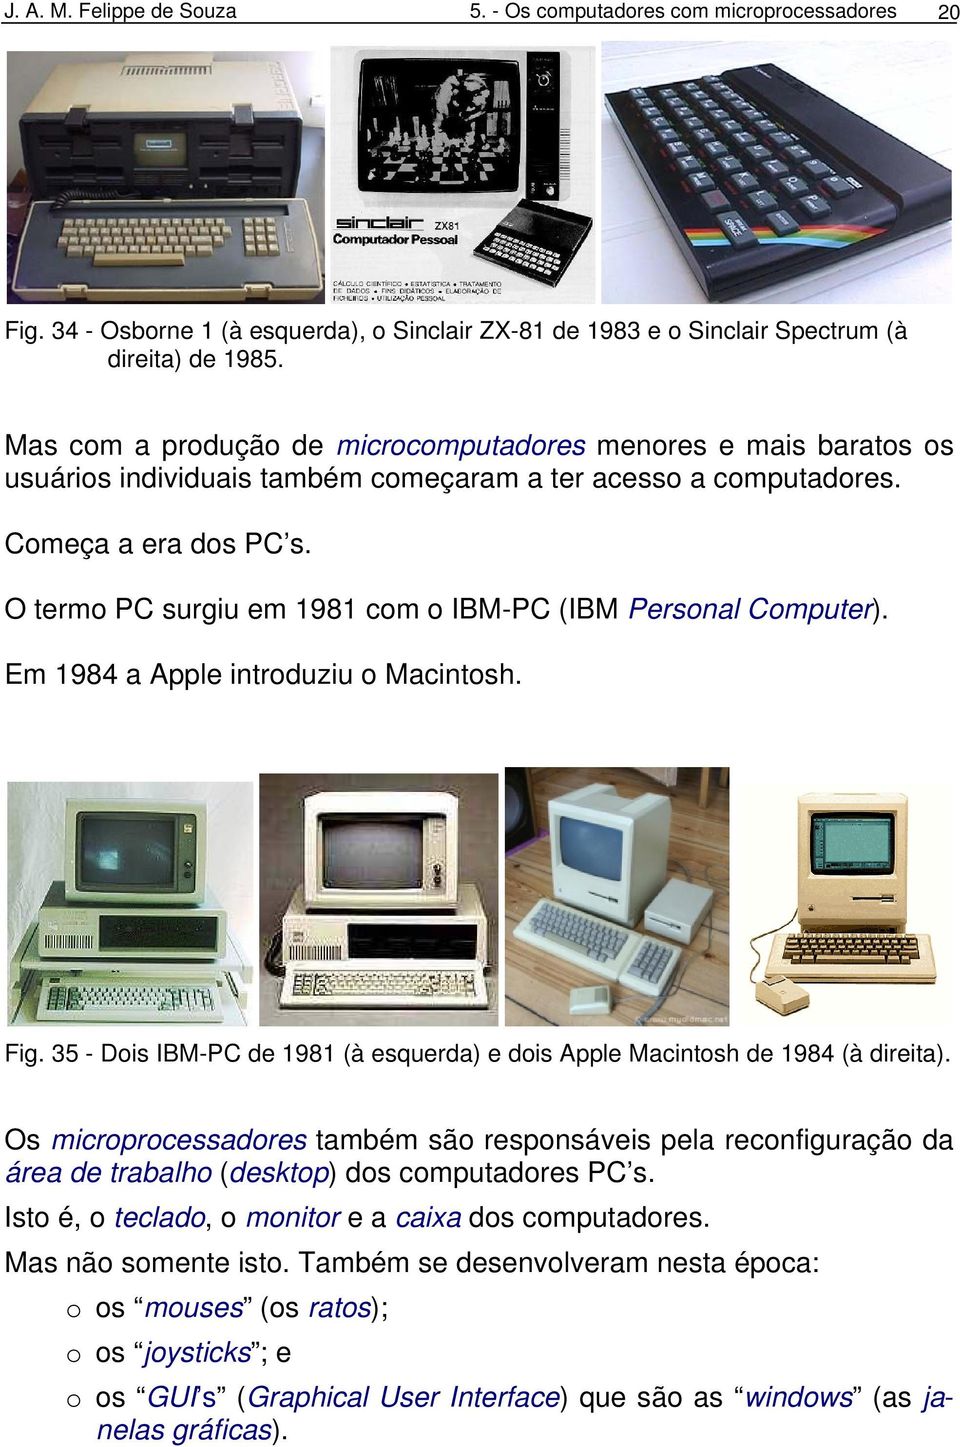 O termo PC surgiu em 1981 com o IBM-PC (IBM Personal Computer). Em 1984 a Apple introduziu o Macintosh. Fig. 35 - Dois IBM-PC de 1981 (à esquerda) e dois Apple Macintosh de 1984 (à direita).